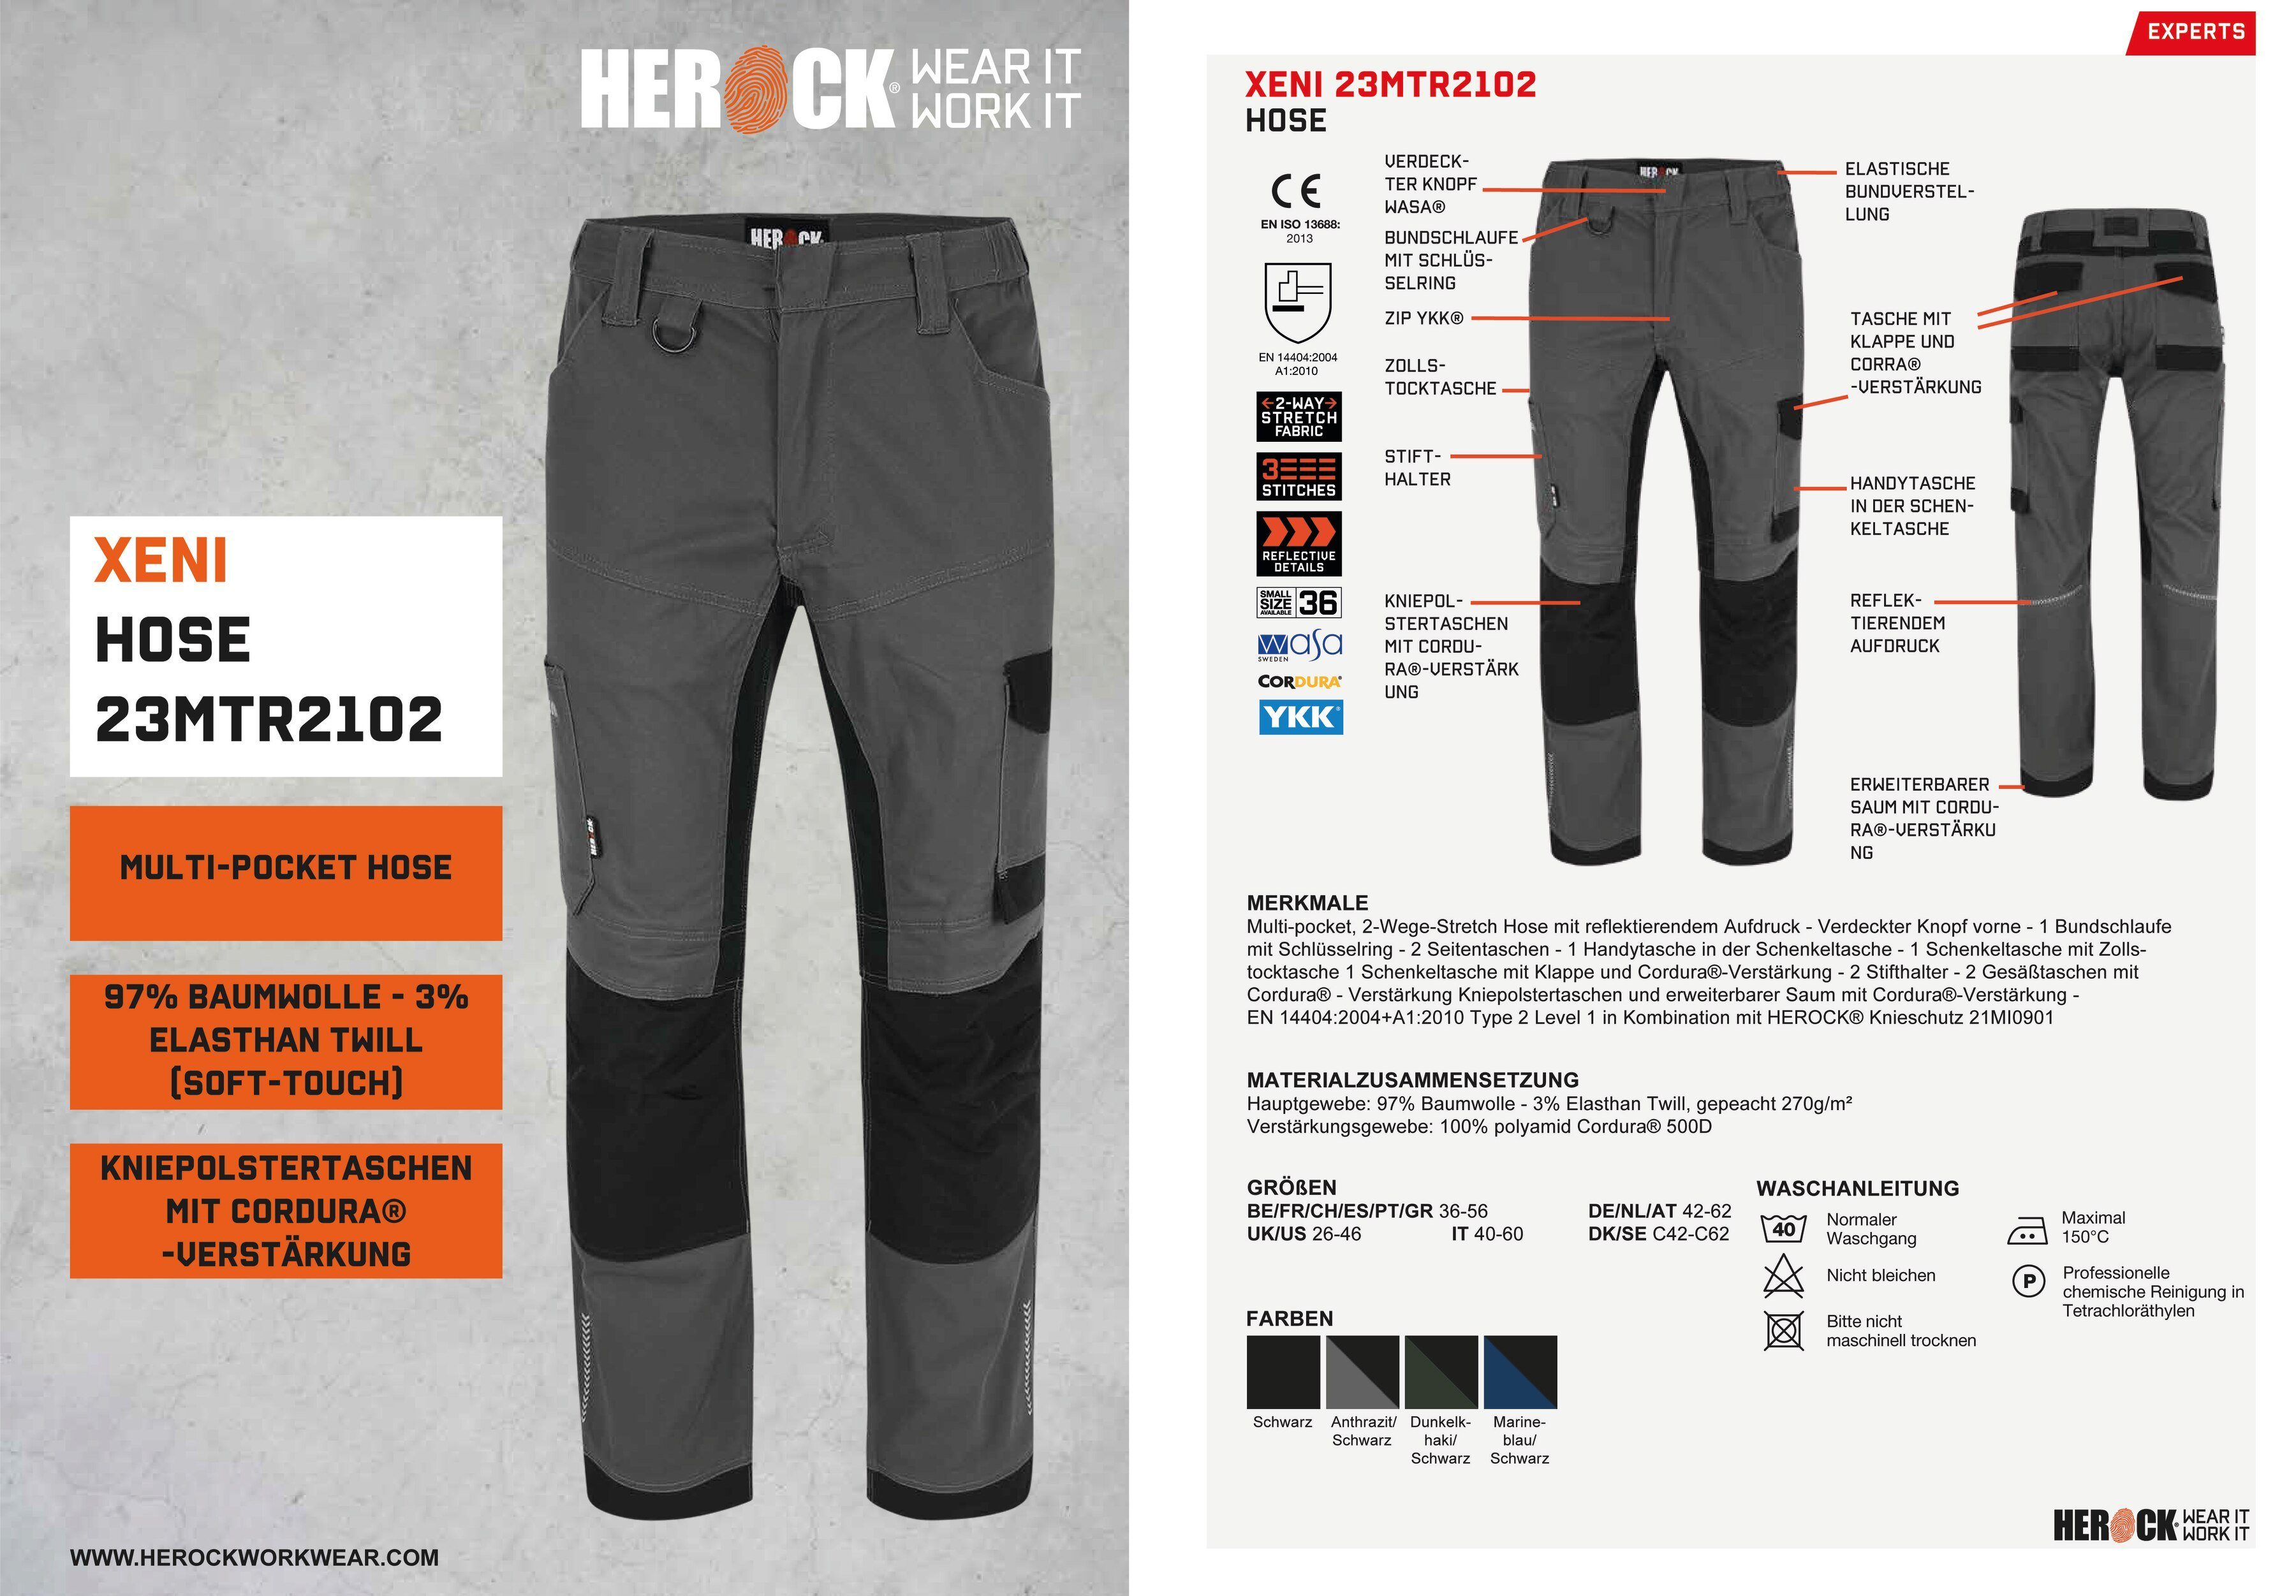 Herock Arbeitshose XENI Multi-pocket, Stretch, grau und Baumwolle, bequem wasserabweisend, weich